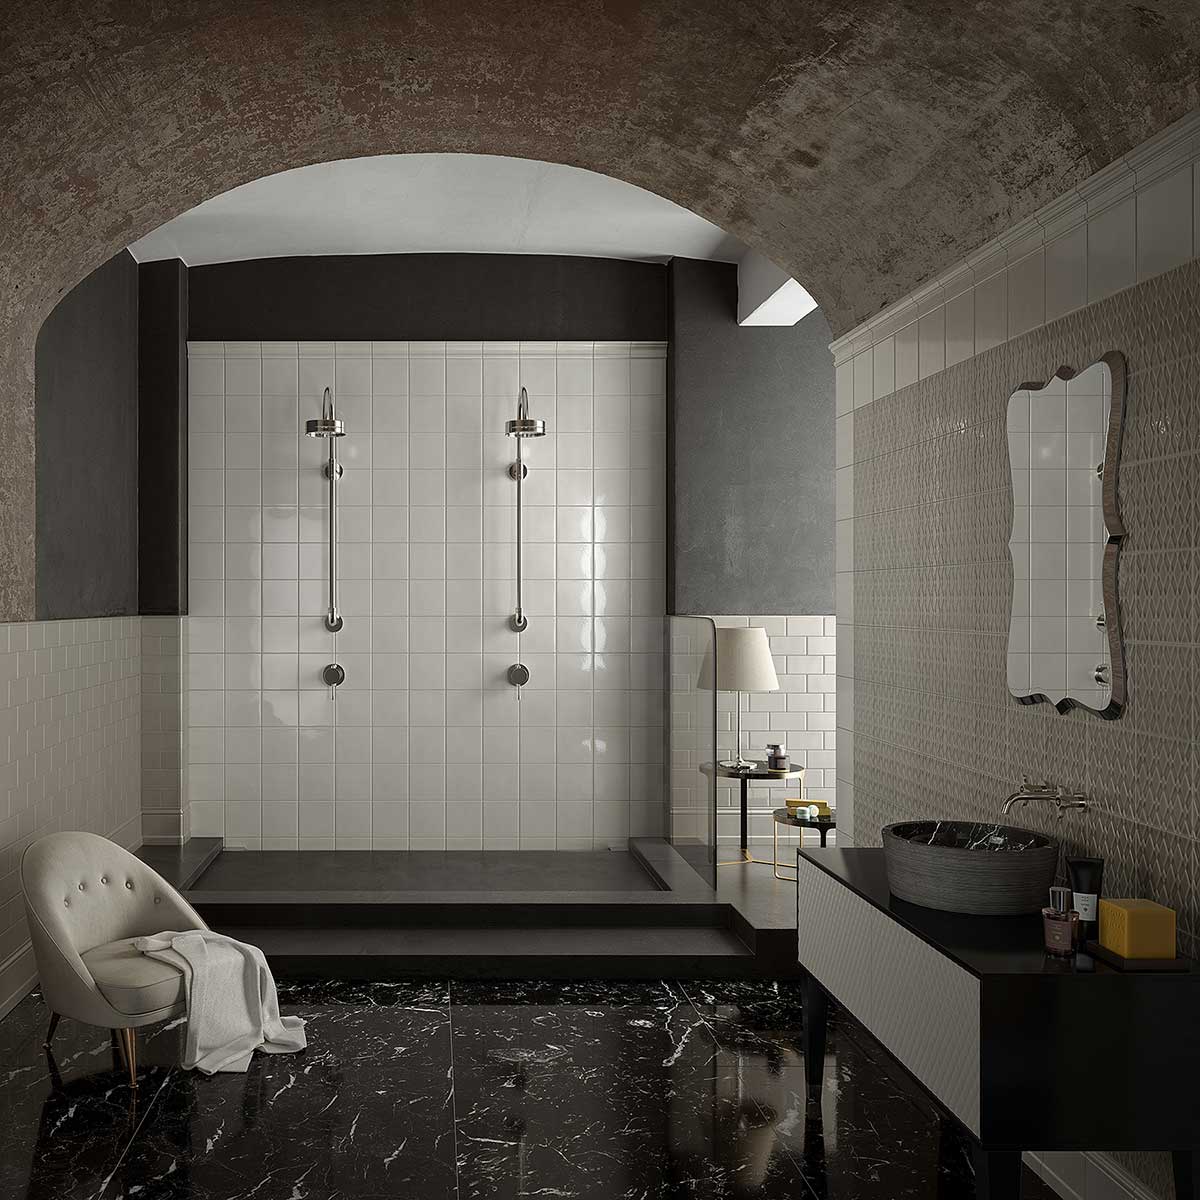 Decorative bathroom tile - maison